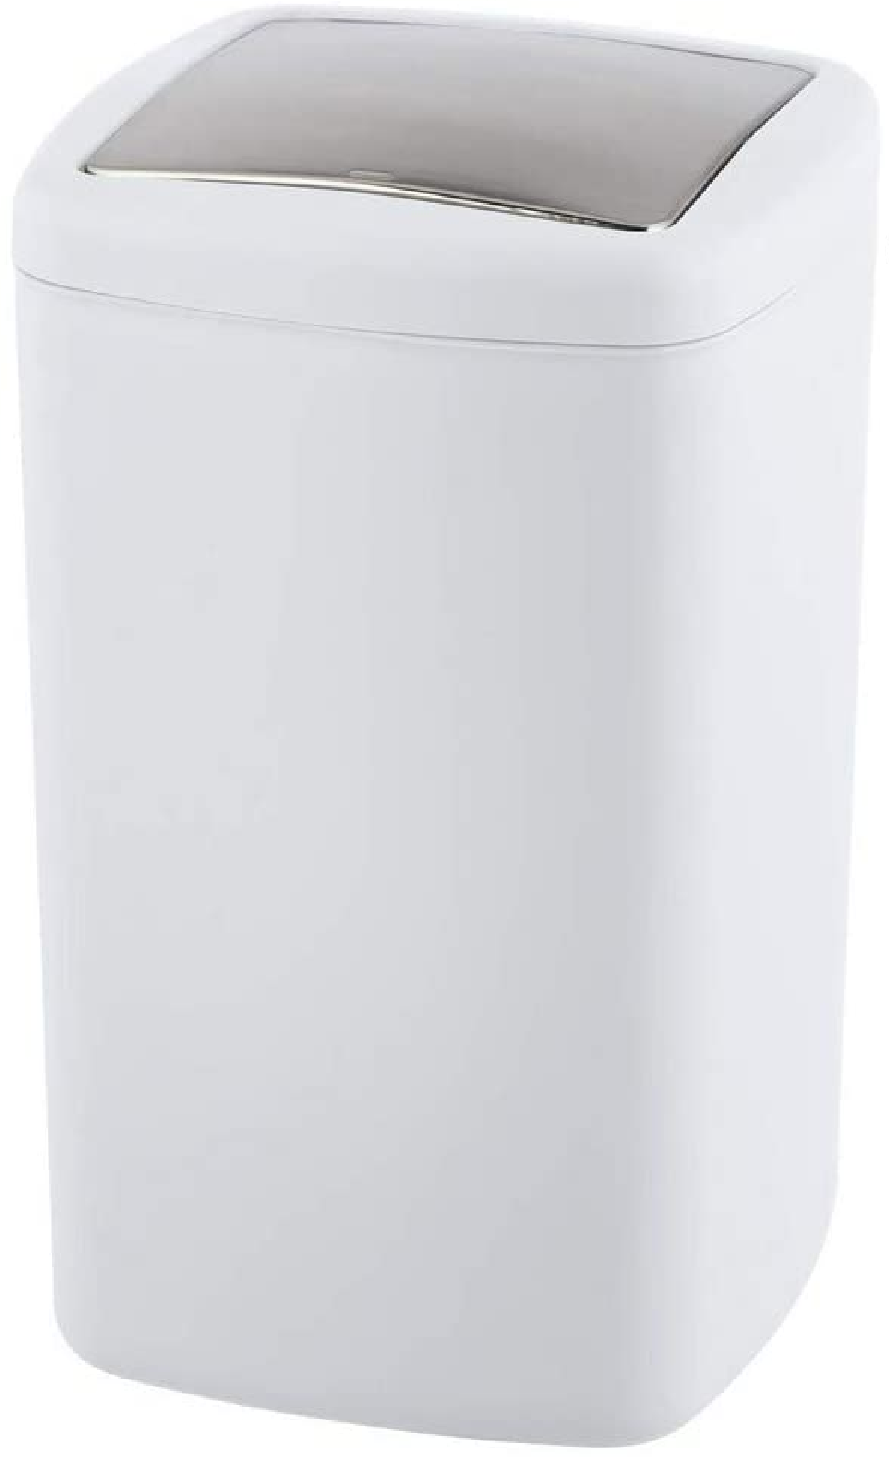 Schwingdeckeleimer Barcelona L Weiß - Kosmetikeimer, absolut bruchsicher Fassungsvermögen: 8.5 l, Kunststoff (TPE), 20.5 x 28.5 x 20.5 cm, Weiß